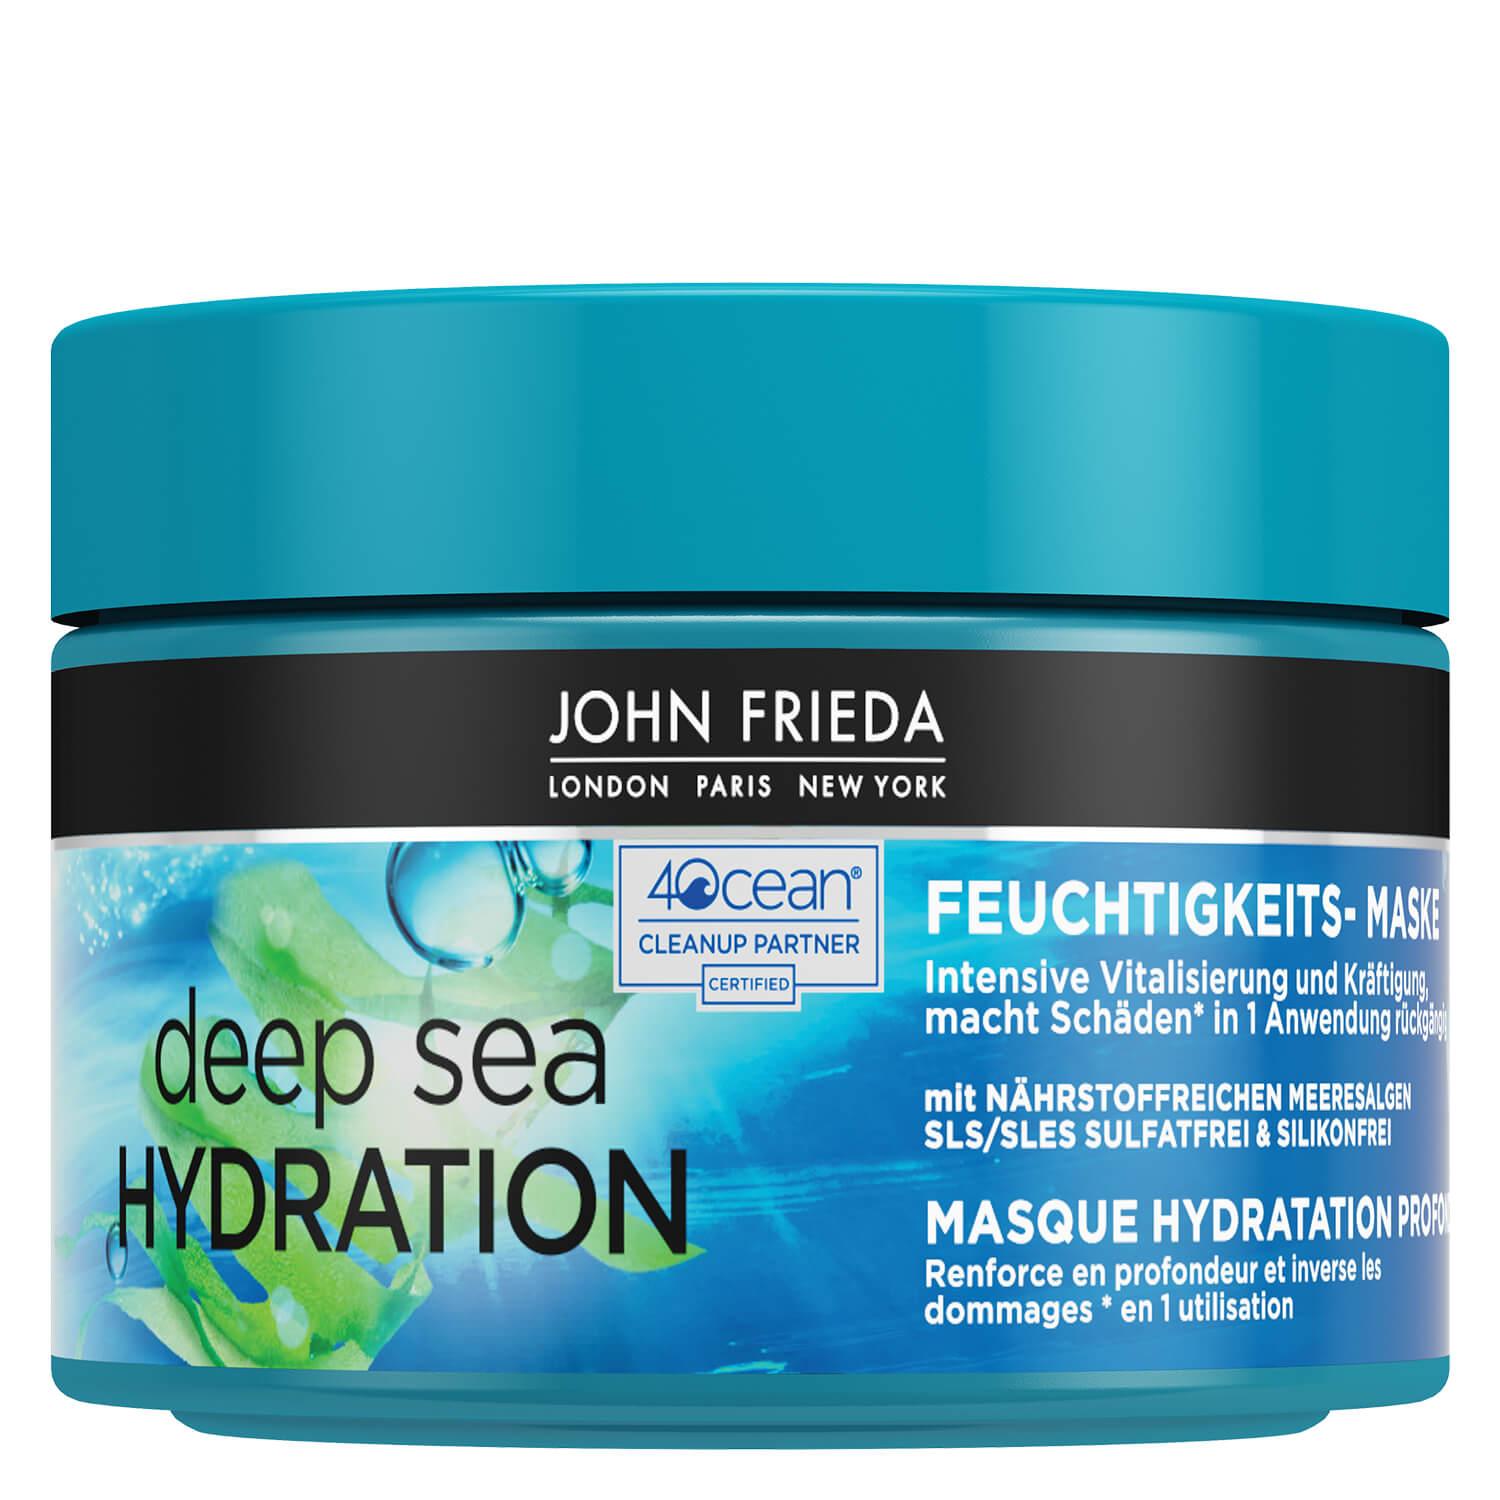 Deep Sea Hydration - Masque Hydratant